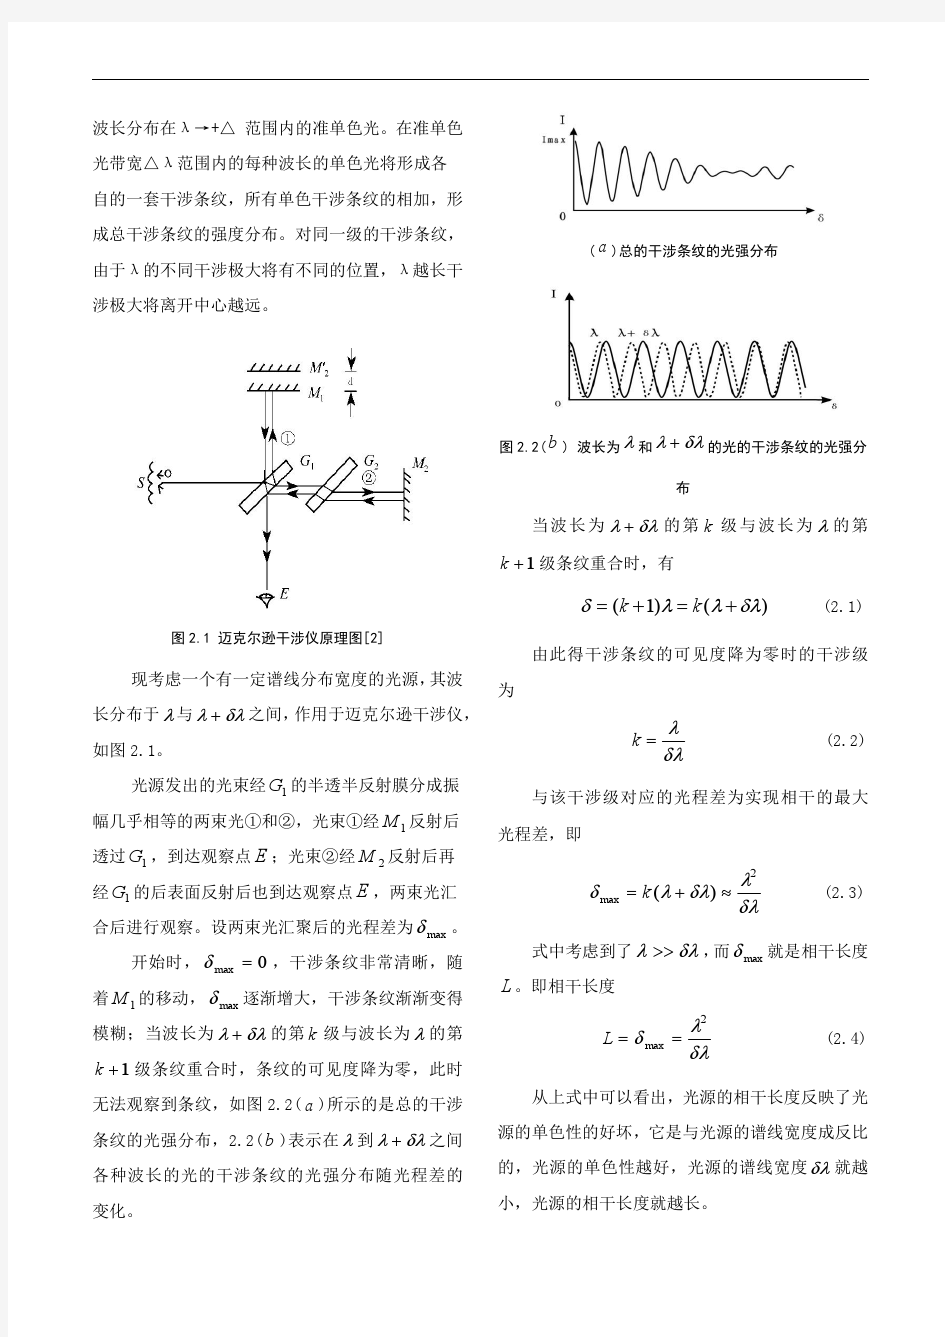 北京邮电大学物理研究性报告 迈克尔逊干涉仪与钠光干涉长度的测量